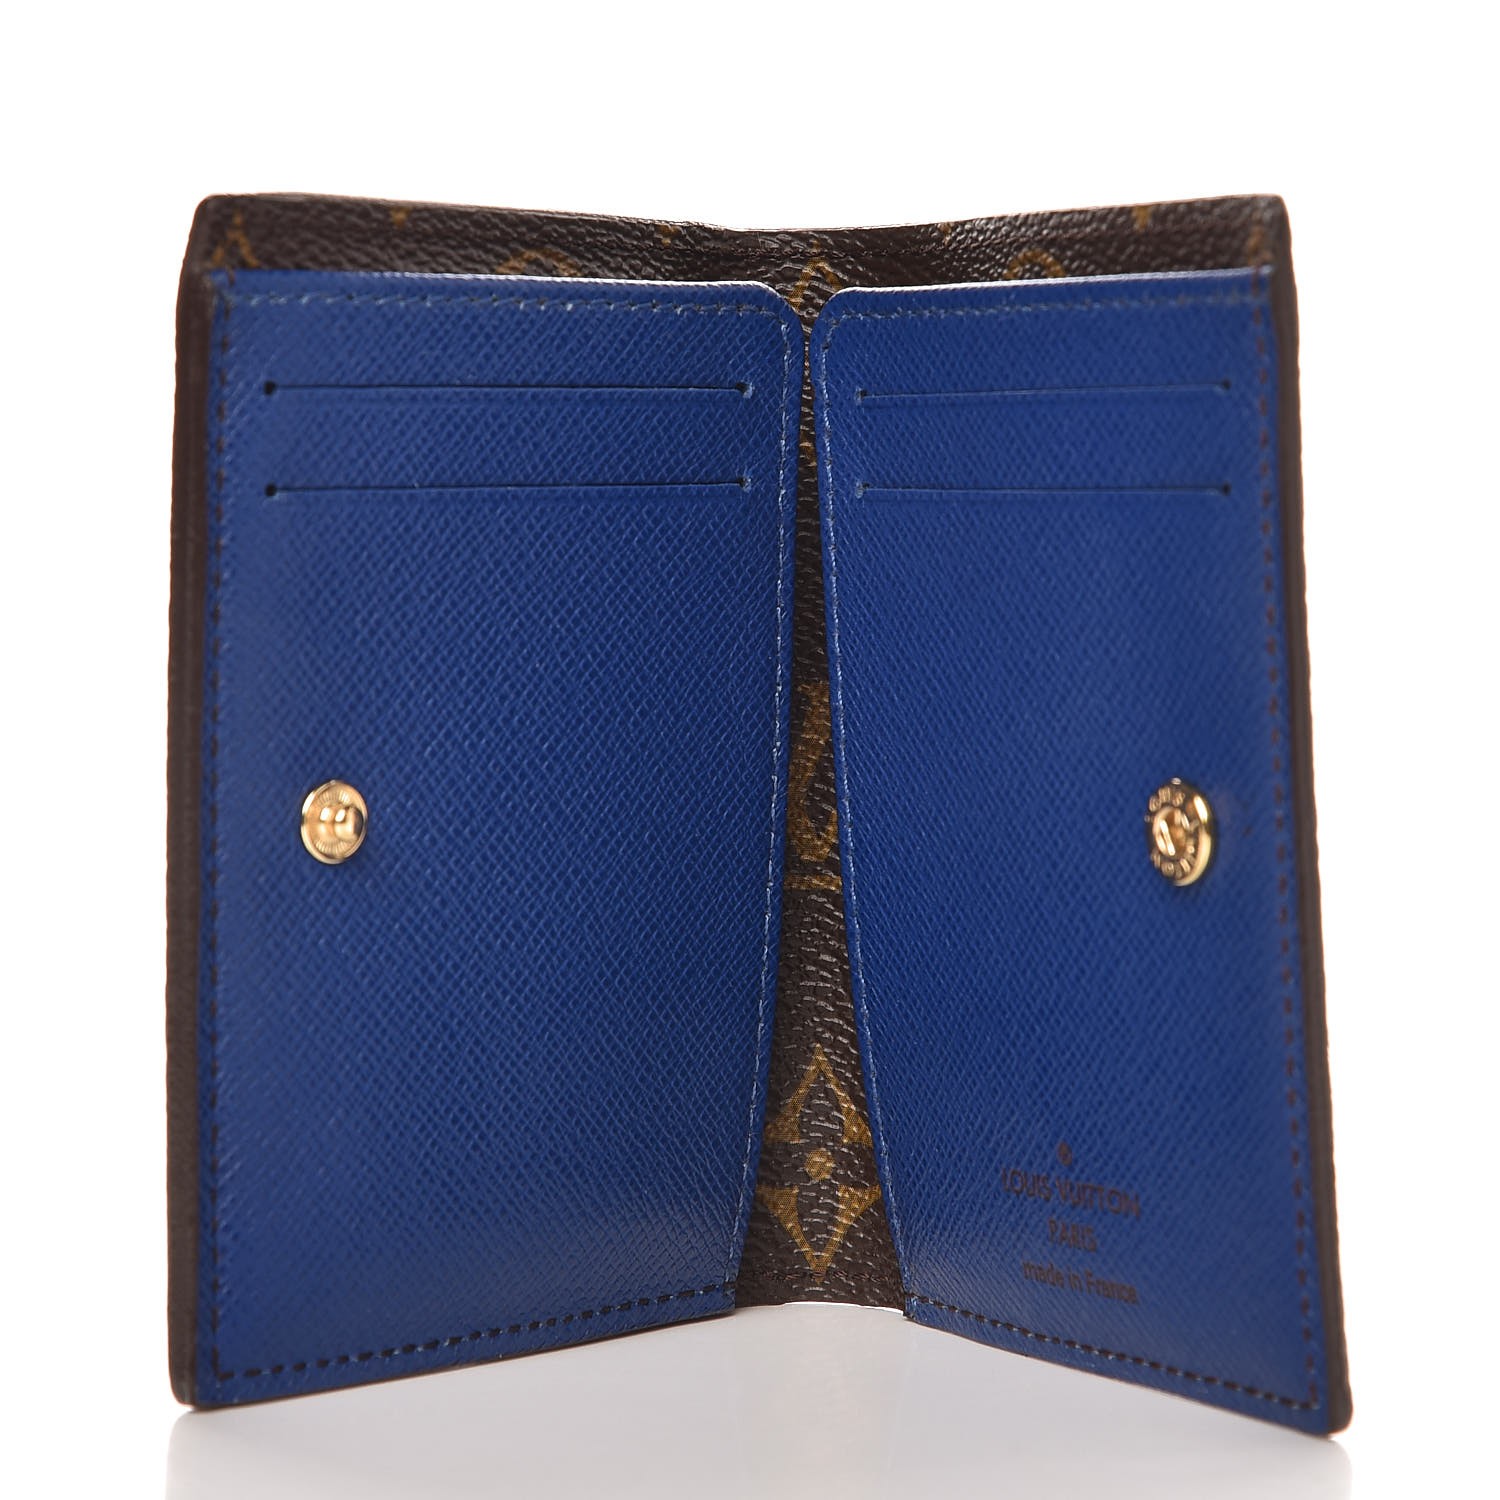 LOUIS VUITTON Monogram Compact Marie Wallet Blue 259746